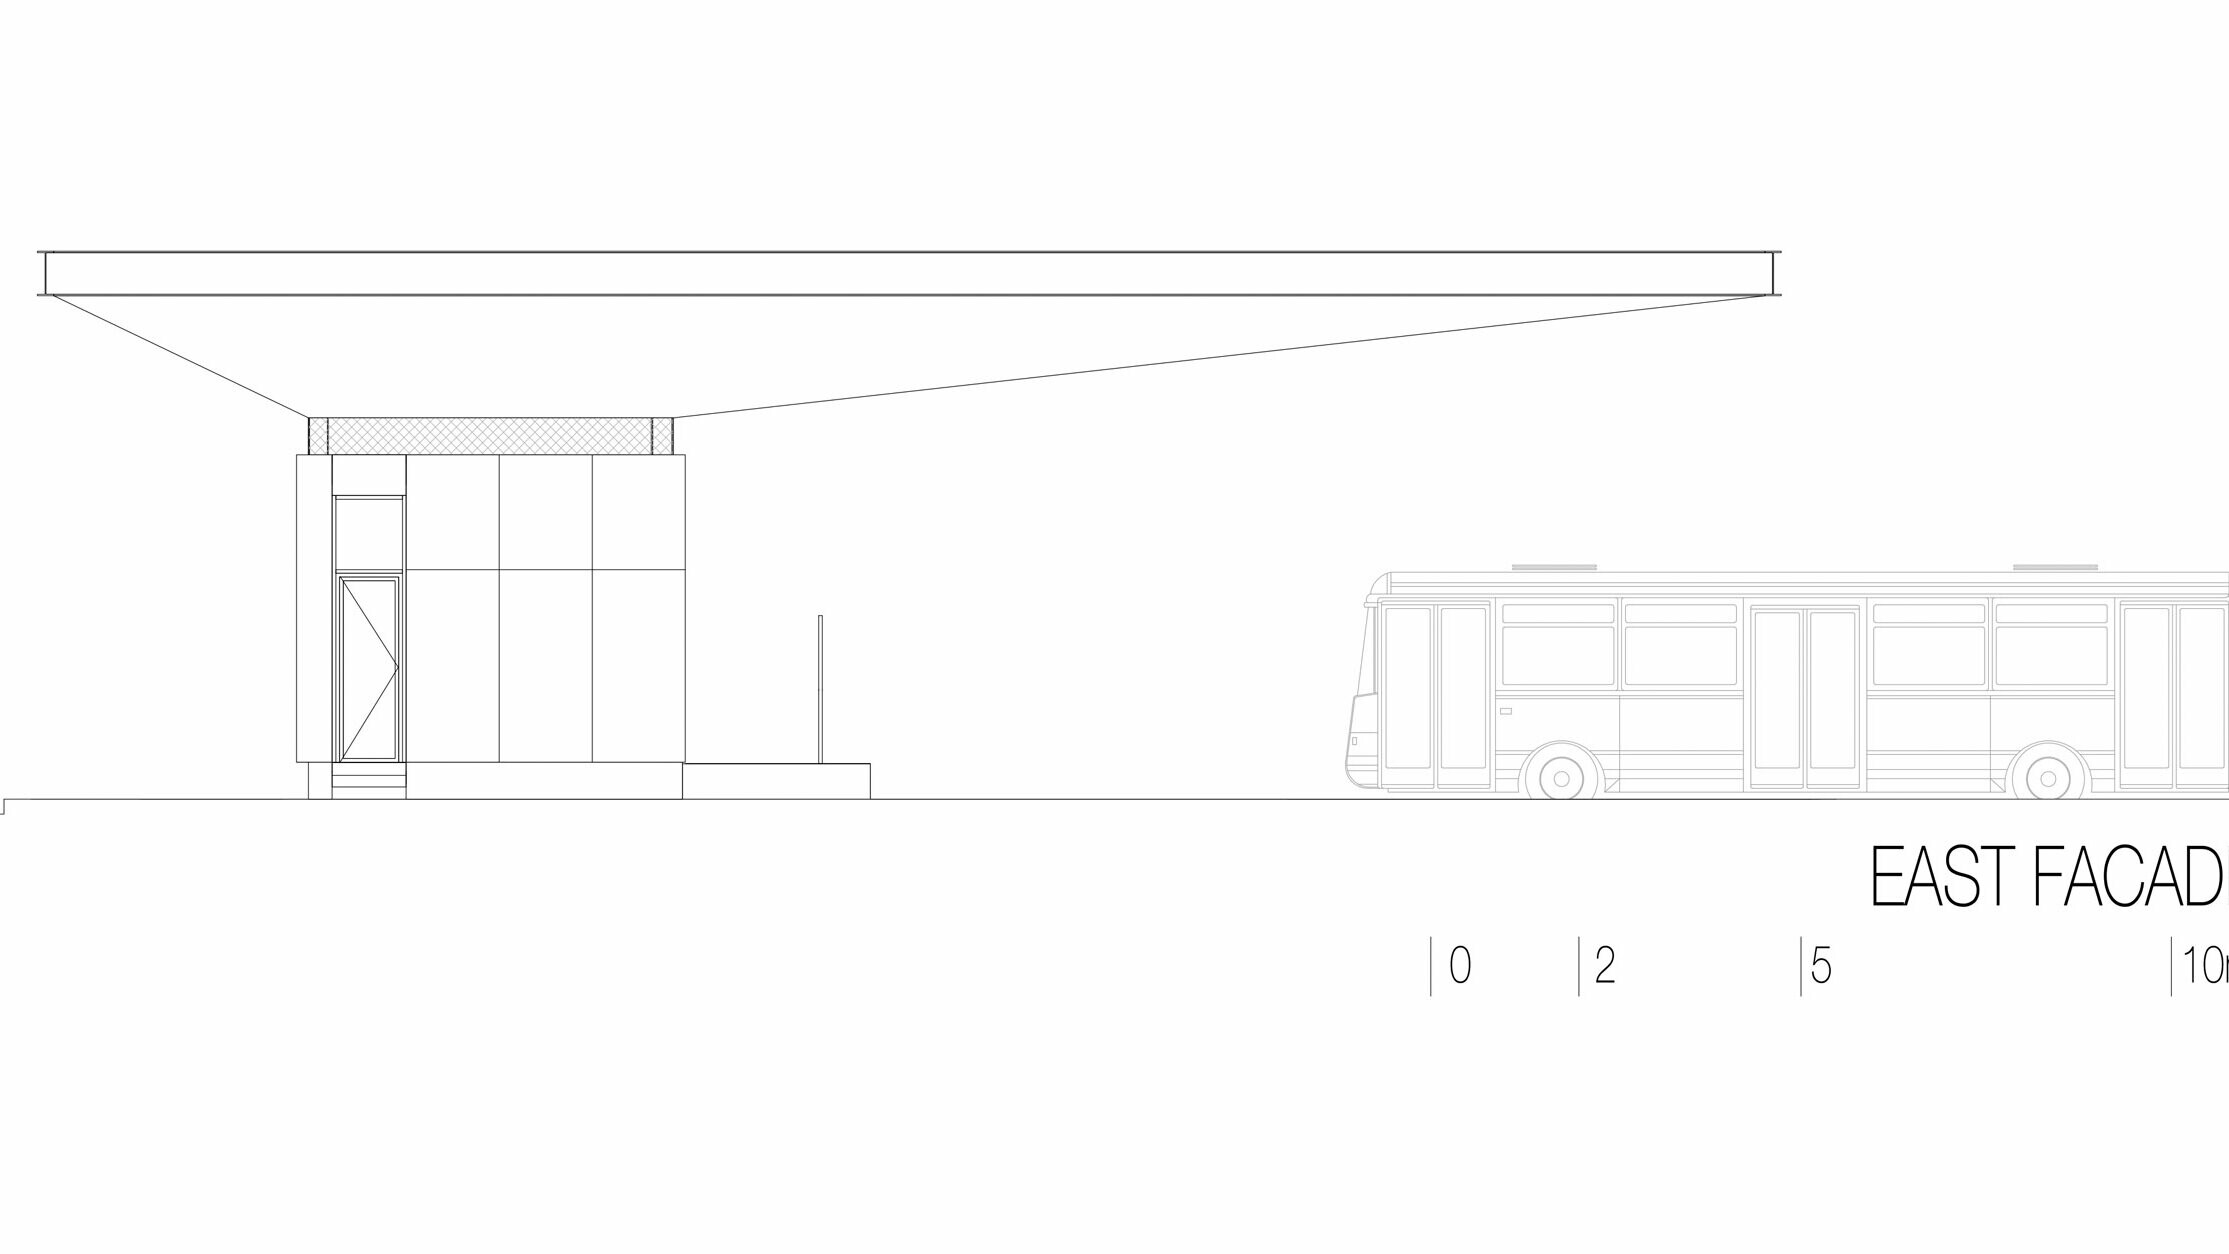 Il disegno mostra la vista est dell’autostazione ”Autobusni Kolodvor Slavonski Brod” in Croazia. L’illustrazione mette in risalto la struttura sottile e orizzontale del tetto bianco Prefalz di PREFA, che corre lungo tutta la lunghezza dell’edificio. Sotto il tetto si trova una struttura rettangolare dalle linee chiare e dalle ampie superfici vetrate. Sul lato destro del disegno è visibile un autobus, che sottolinea le proporzioni della stazione rispetto a un veicolo. La vista est evidenzia l’architettura moderna e funzionale della stazione, che crea un’atmosfera luminosa e invitante grazie all’uso di vetro e alluminio.